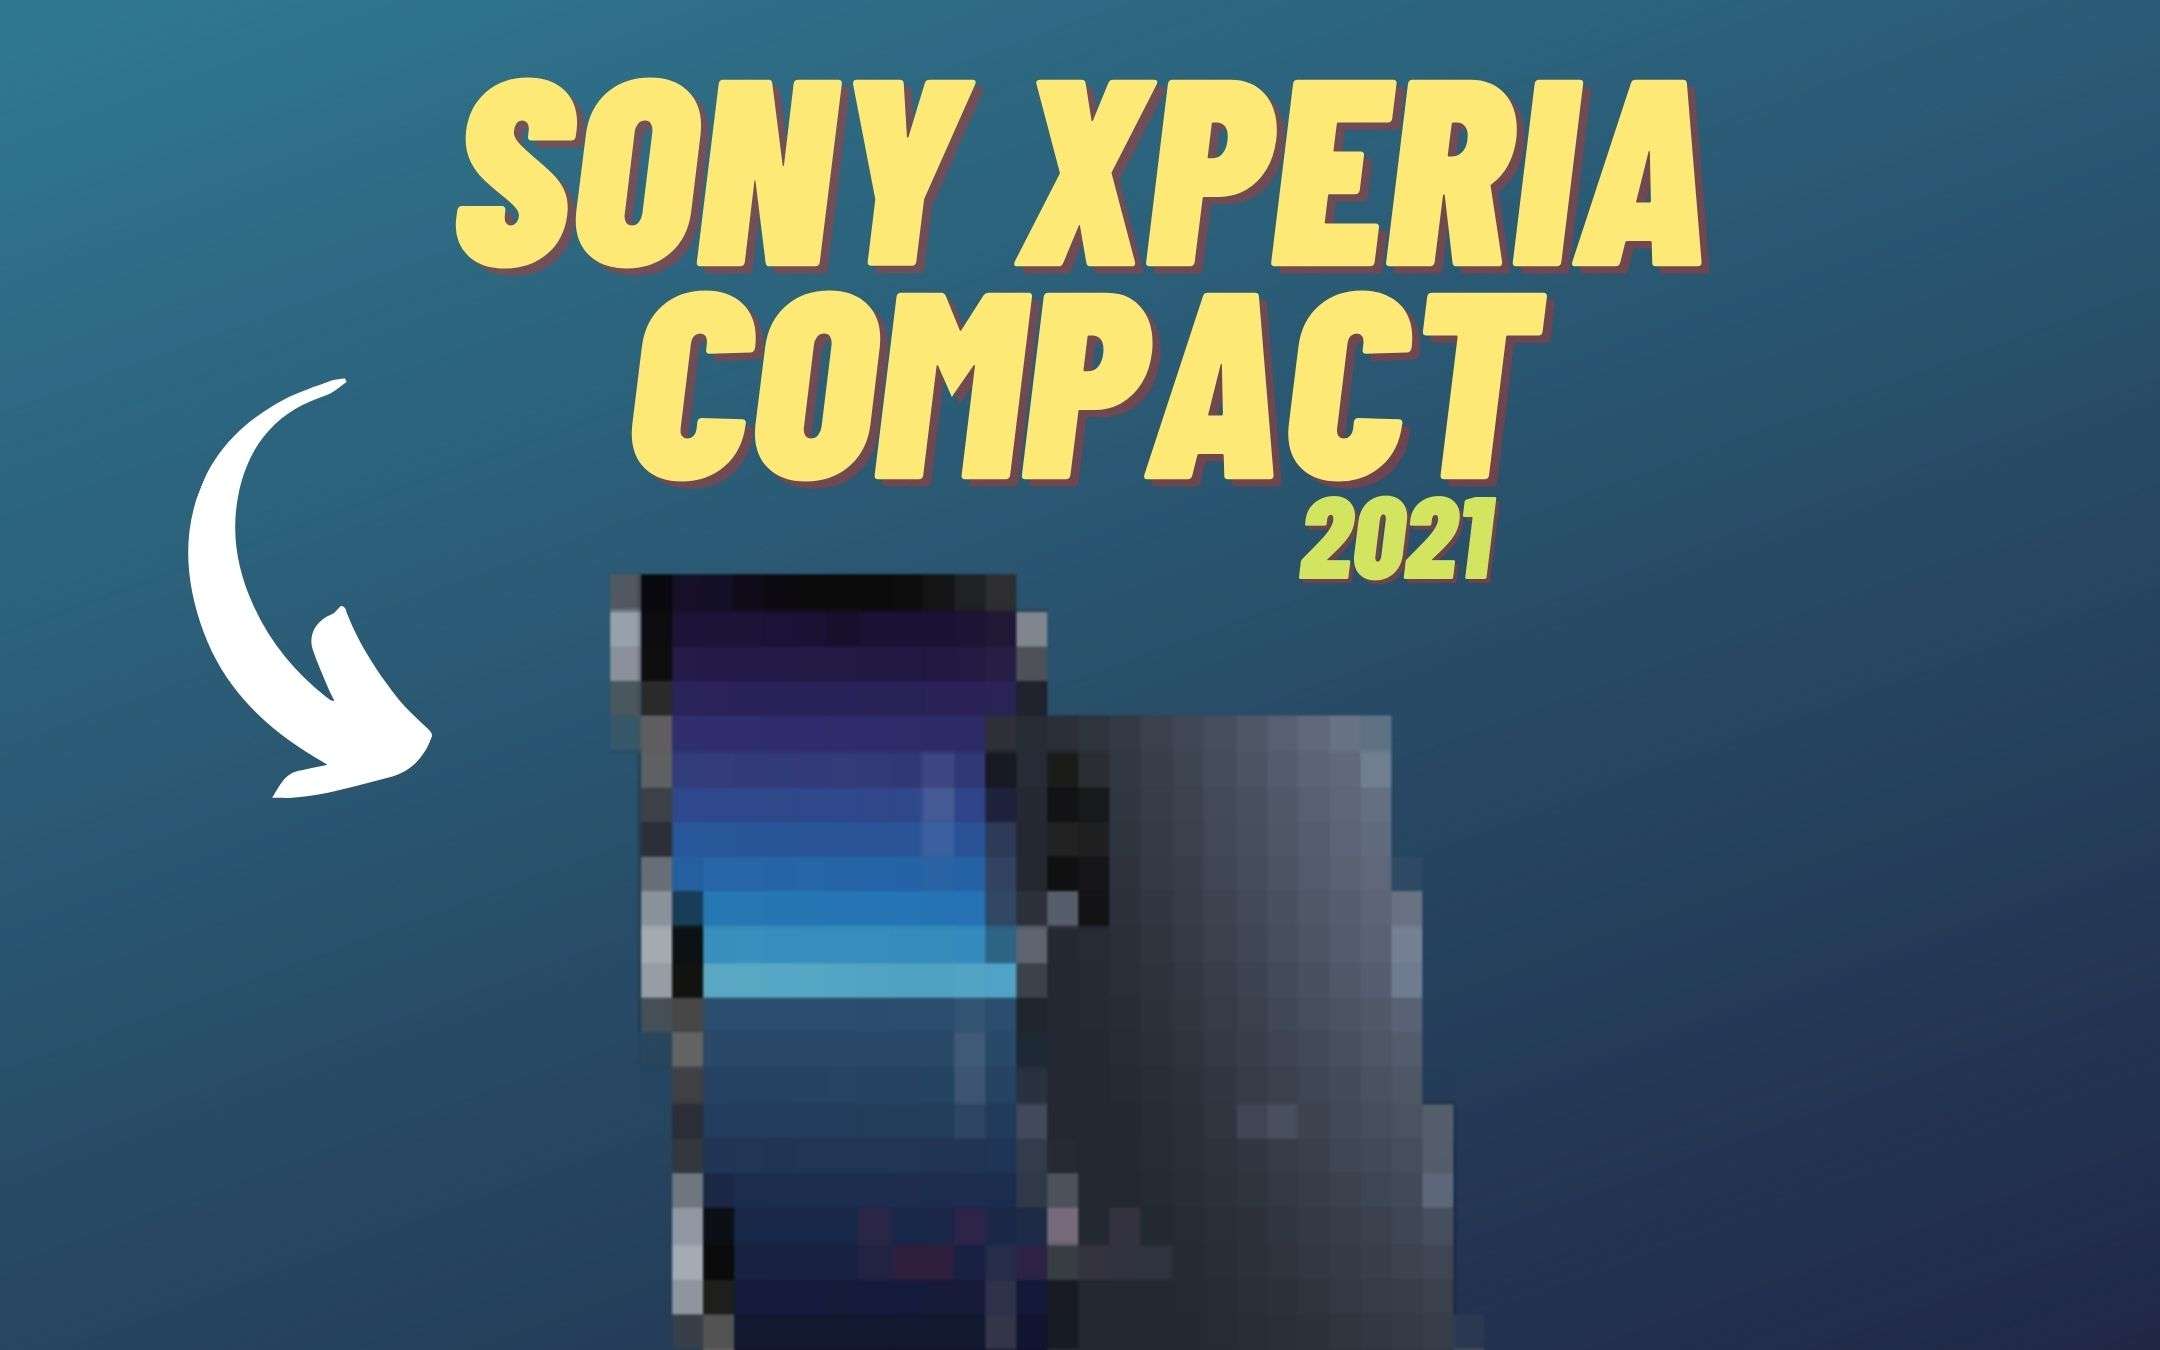 Sony Xperia Compact 2021: un graditissimo ritorno!